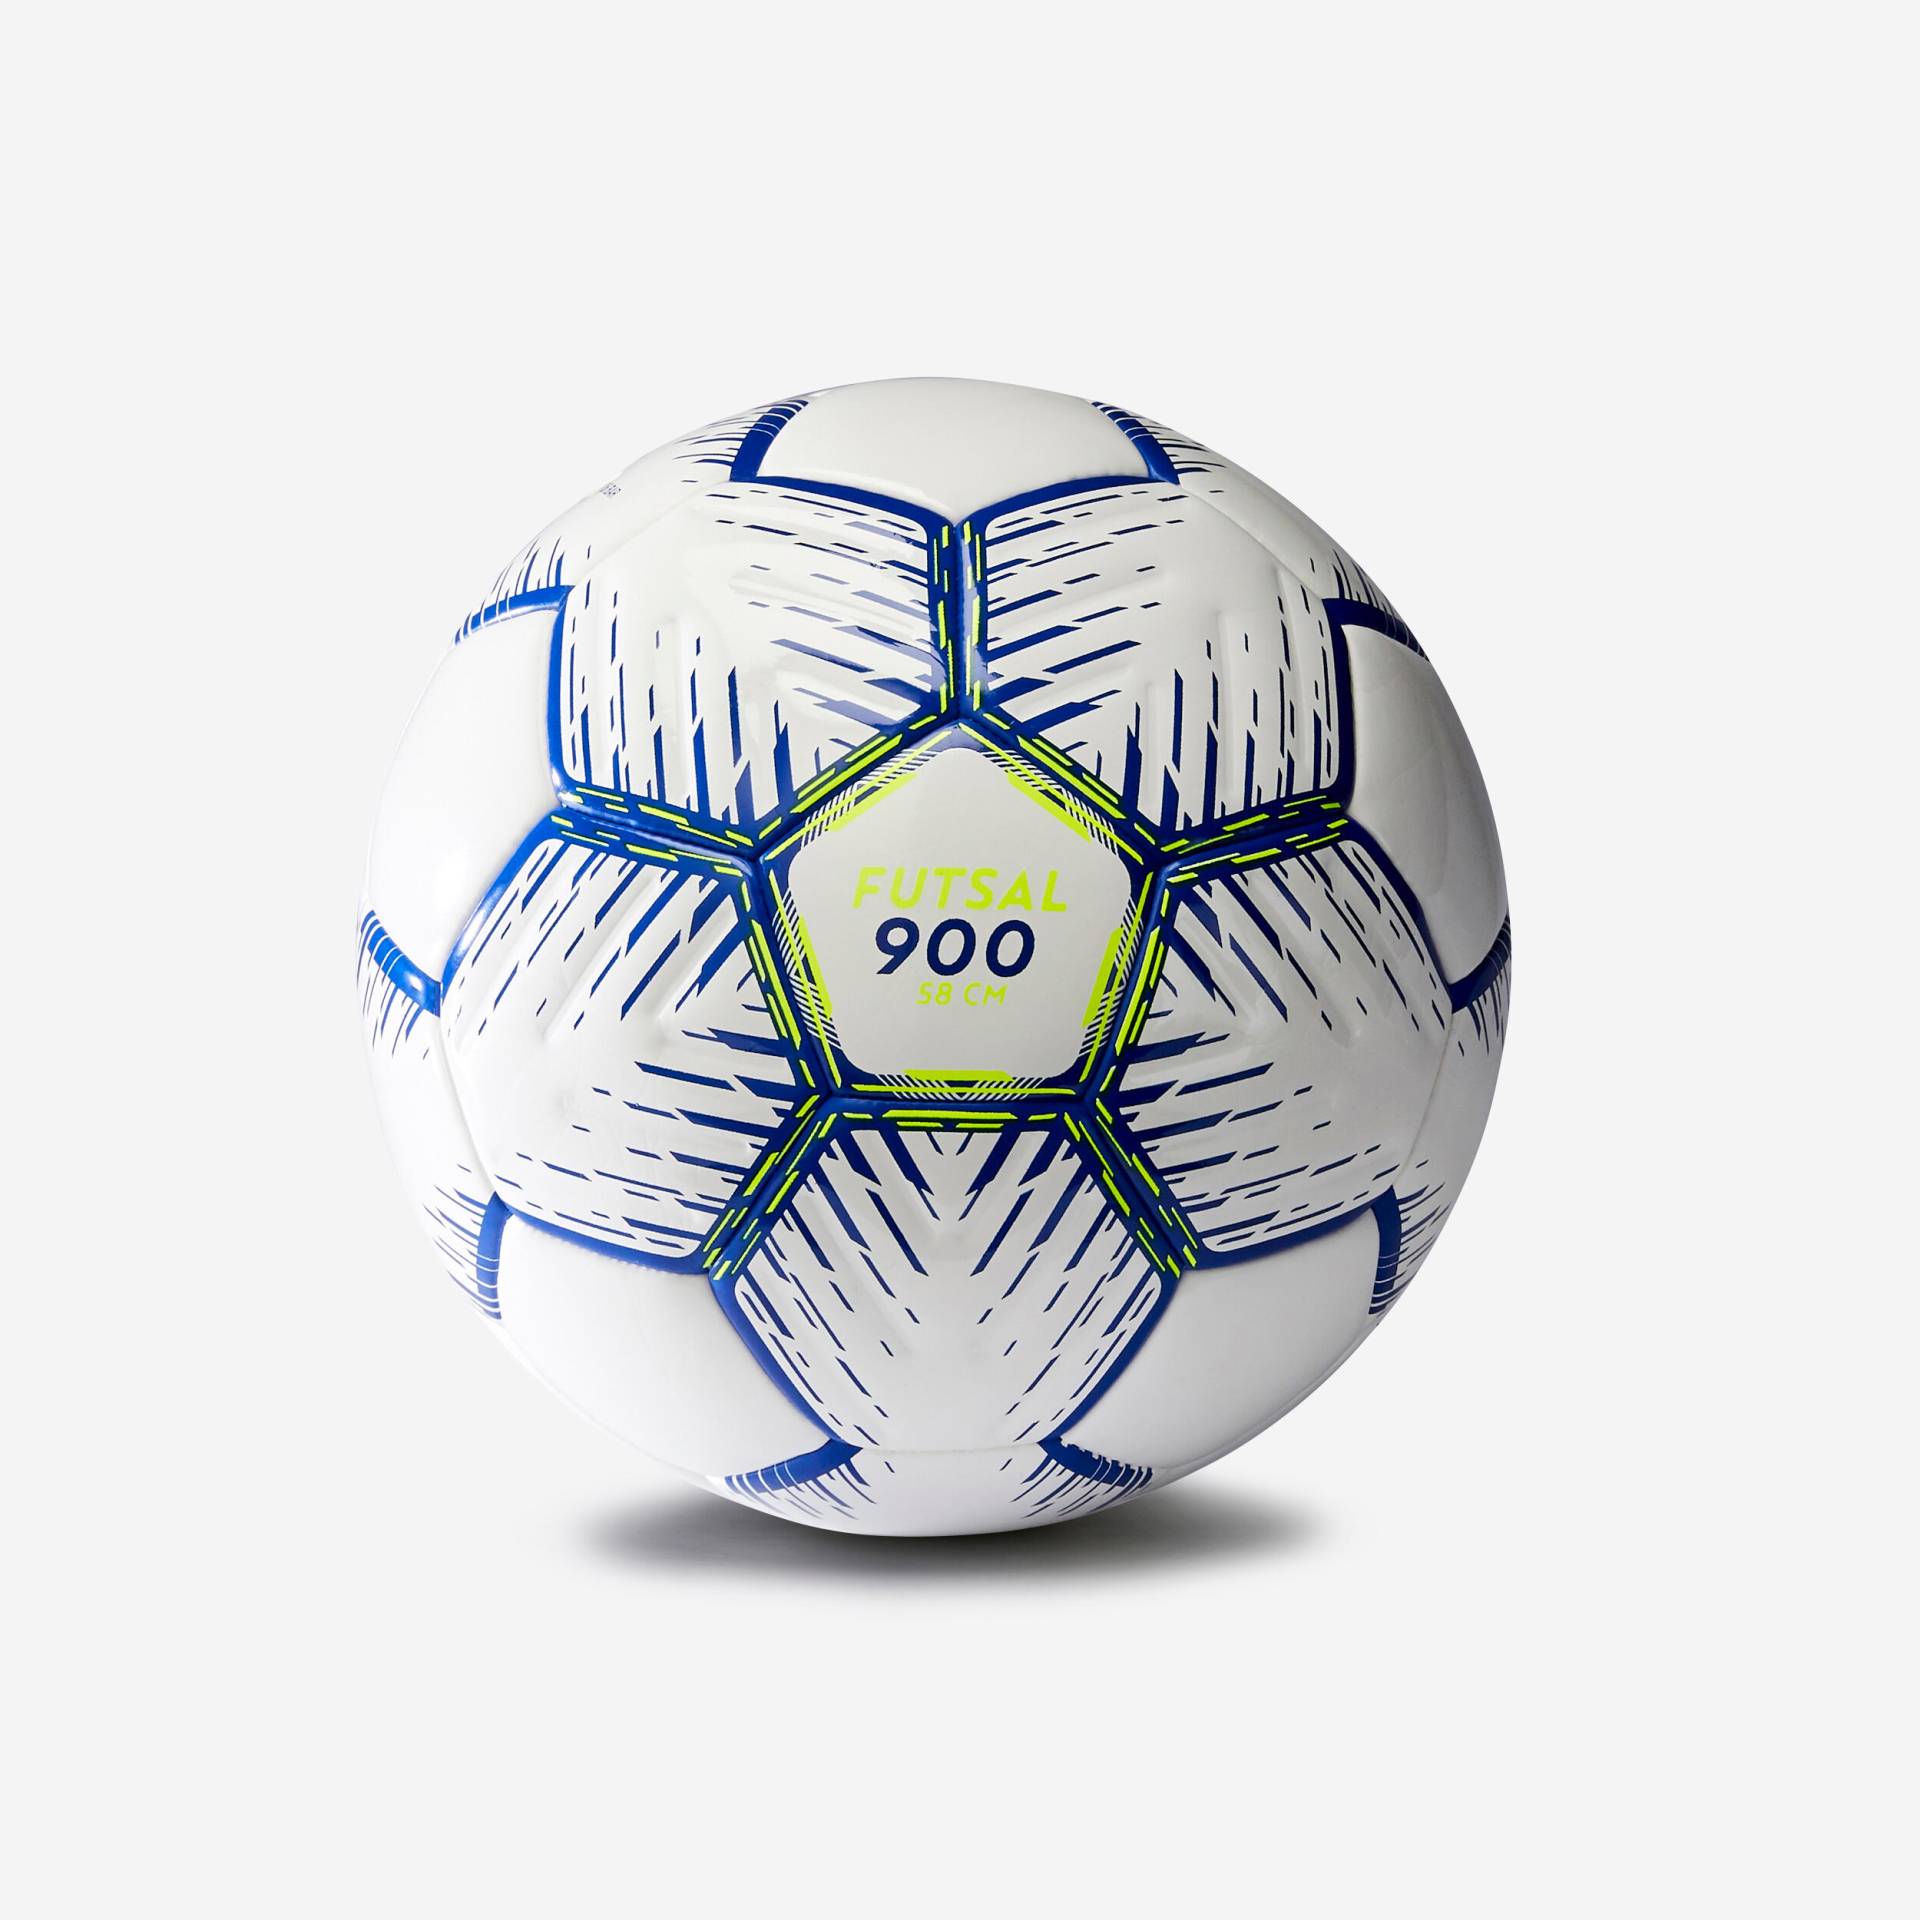 Fussball Futsalball Grösse 3 (58 cm) 350 - 390g - FS 900 weiss/blau von KIPSTA